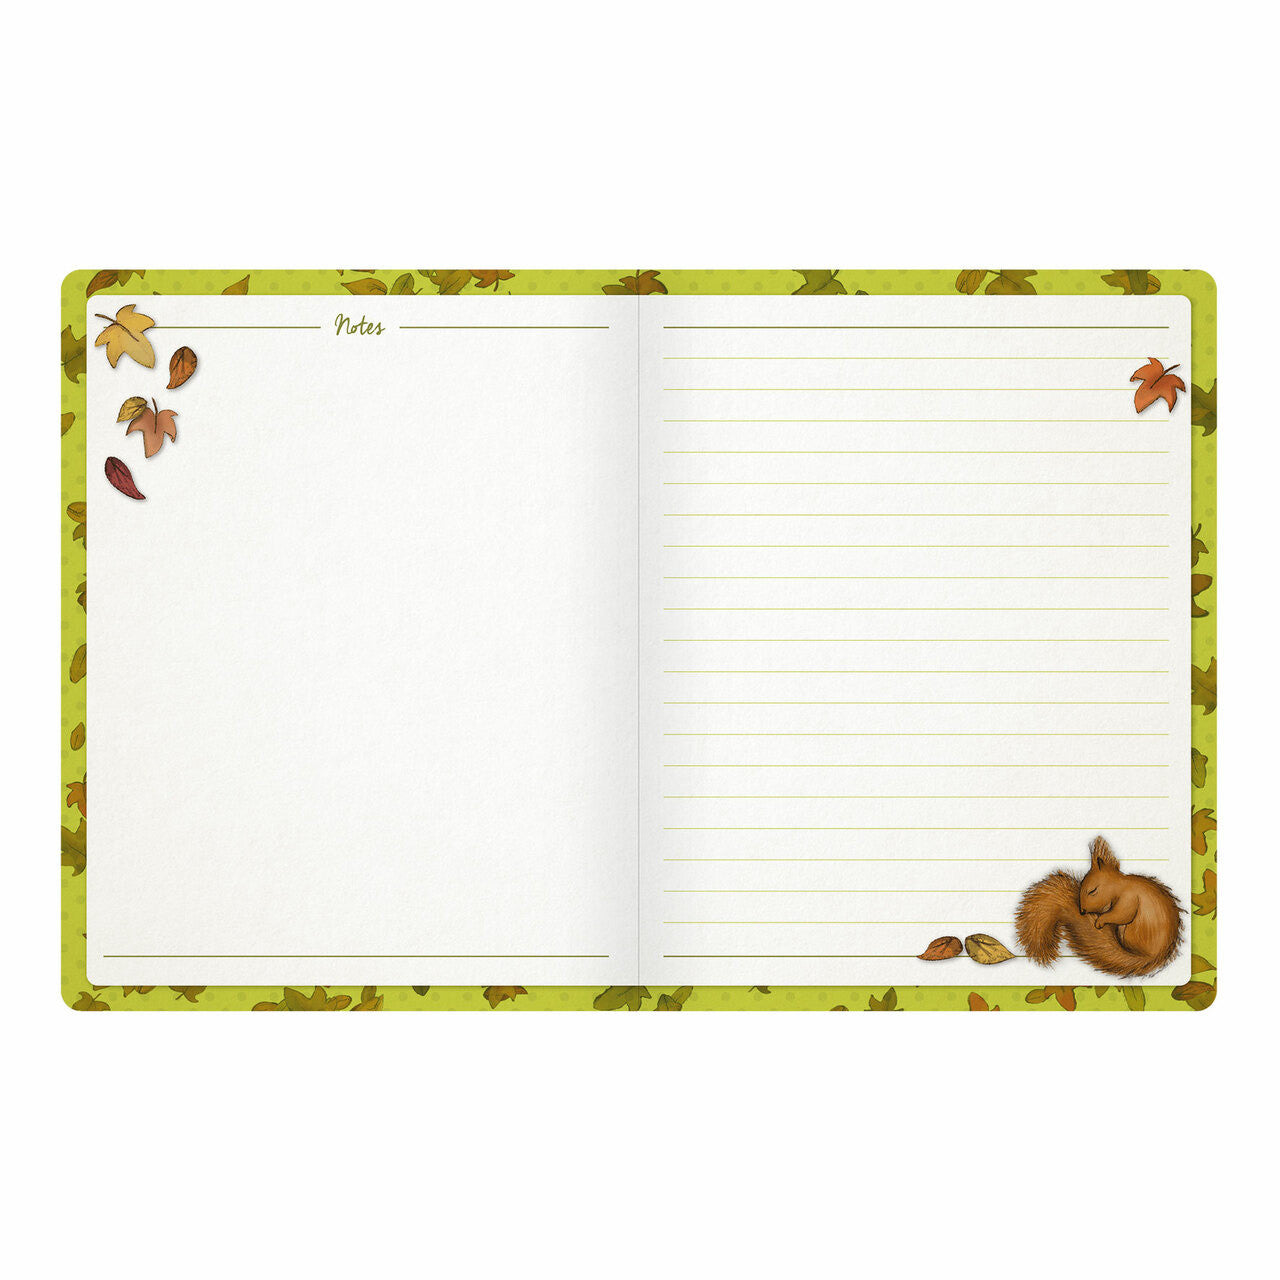 Gorjuss Daily Planner Autumn Leaves (975GJ02)